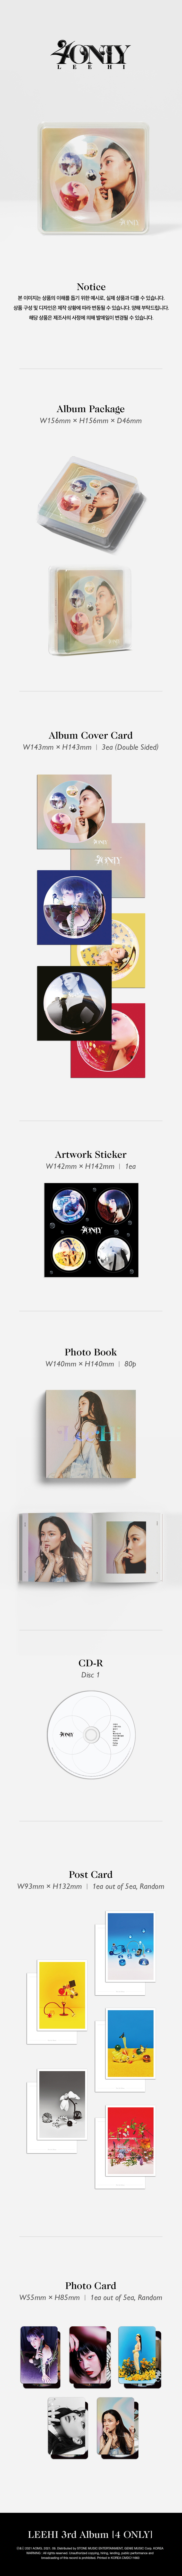 Lee Hi - 3RD ALBUM [4ONLY] AOMG LEE Hi 4ONLY album cd